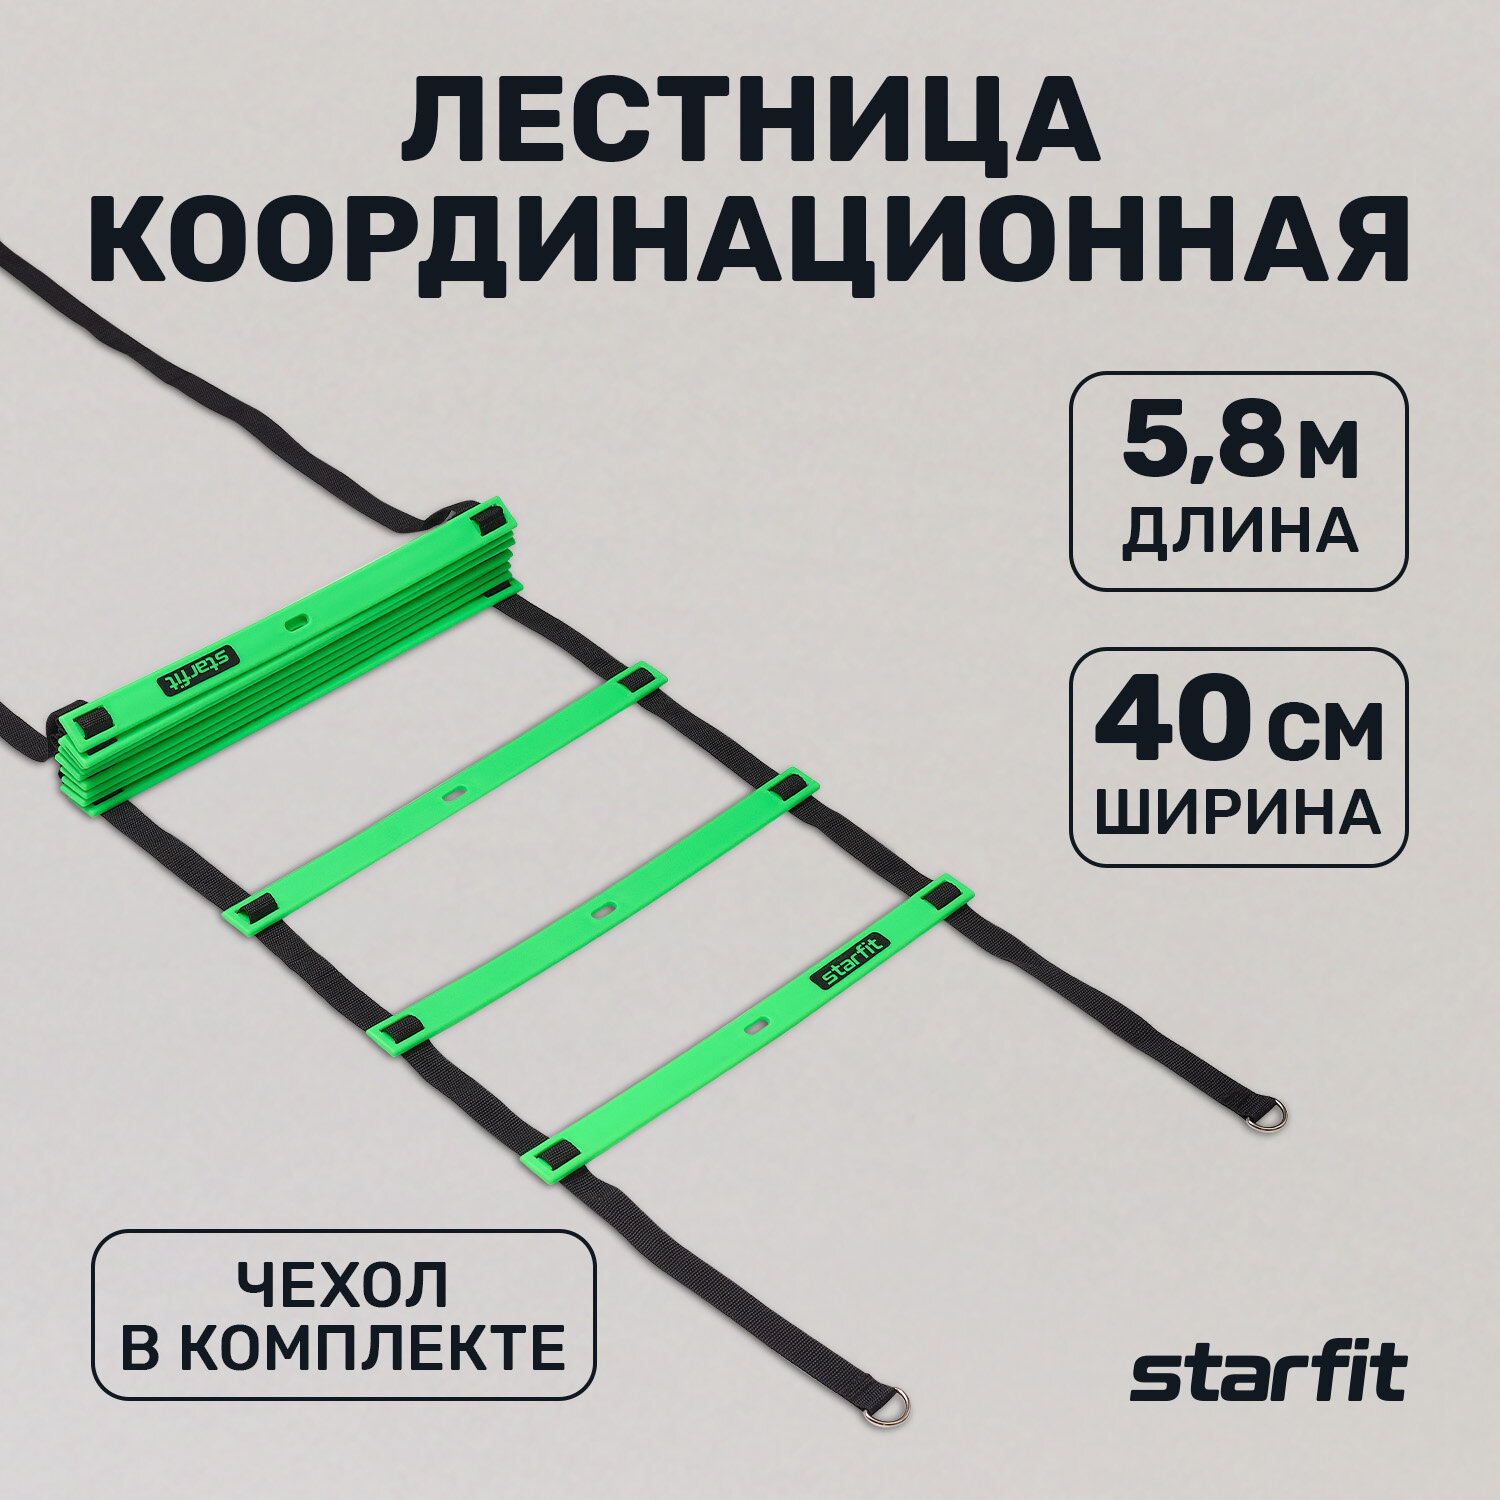 Лестница координационная STARFIT FA-601 580 см ярко-зеленый/черный